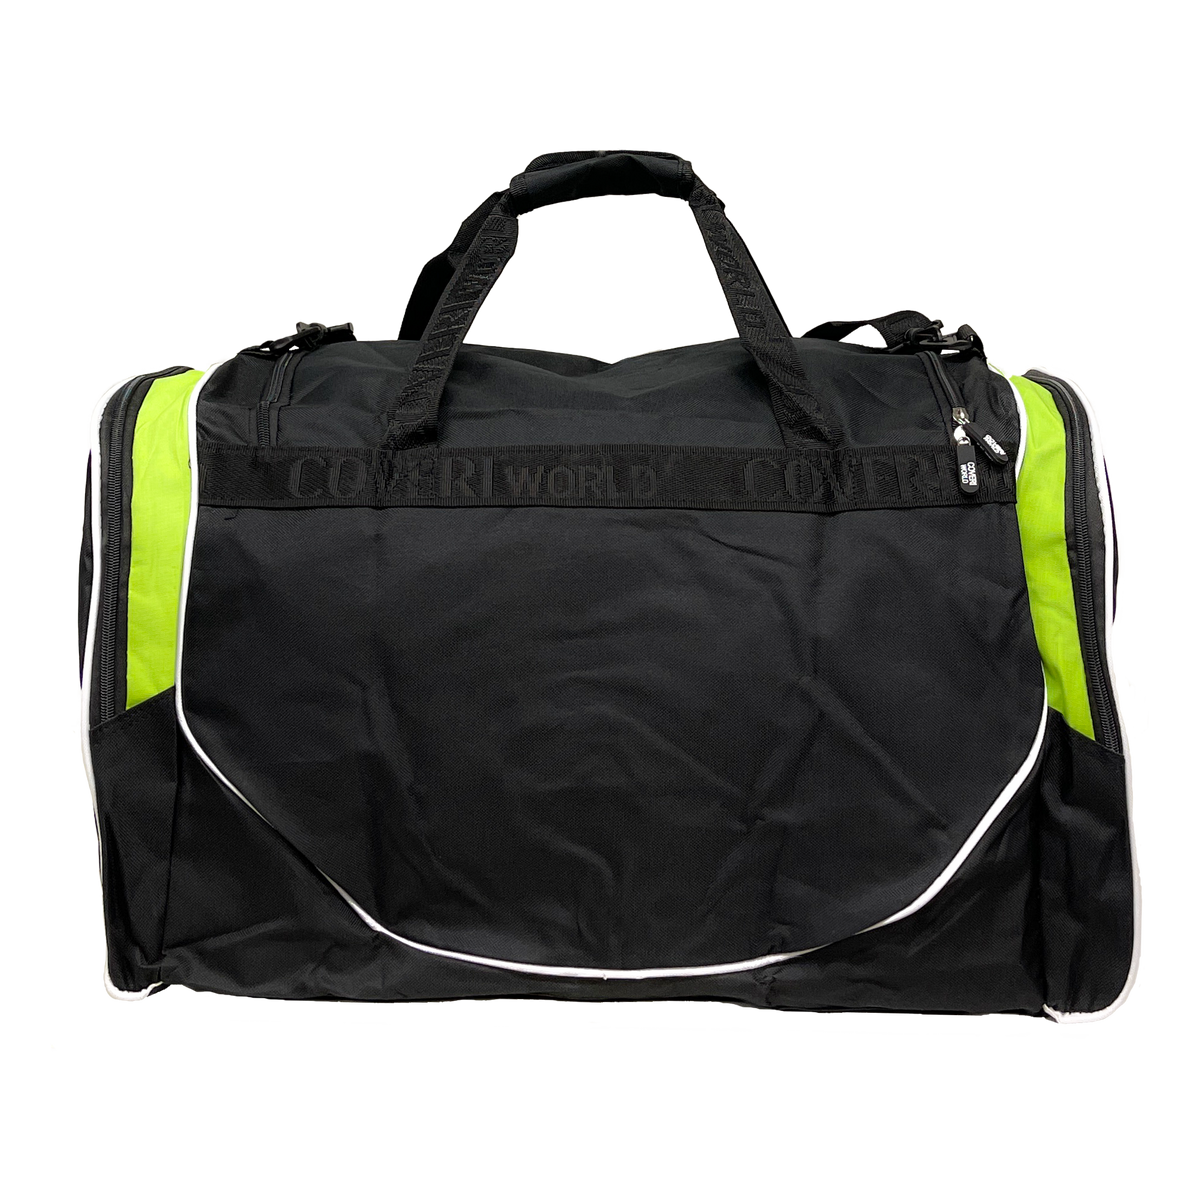 Coveri World - Multifunkčná športová taška: Ideálna pre šport a cestovanie